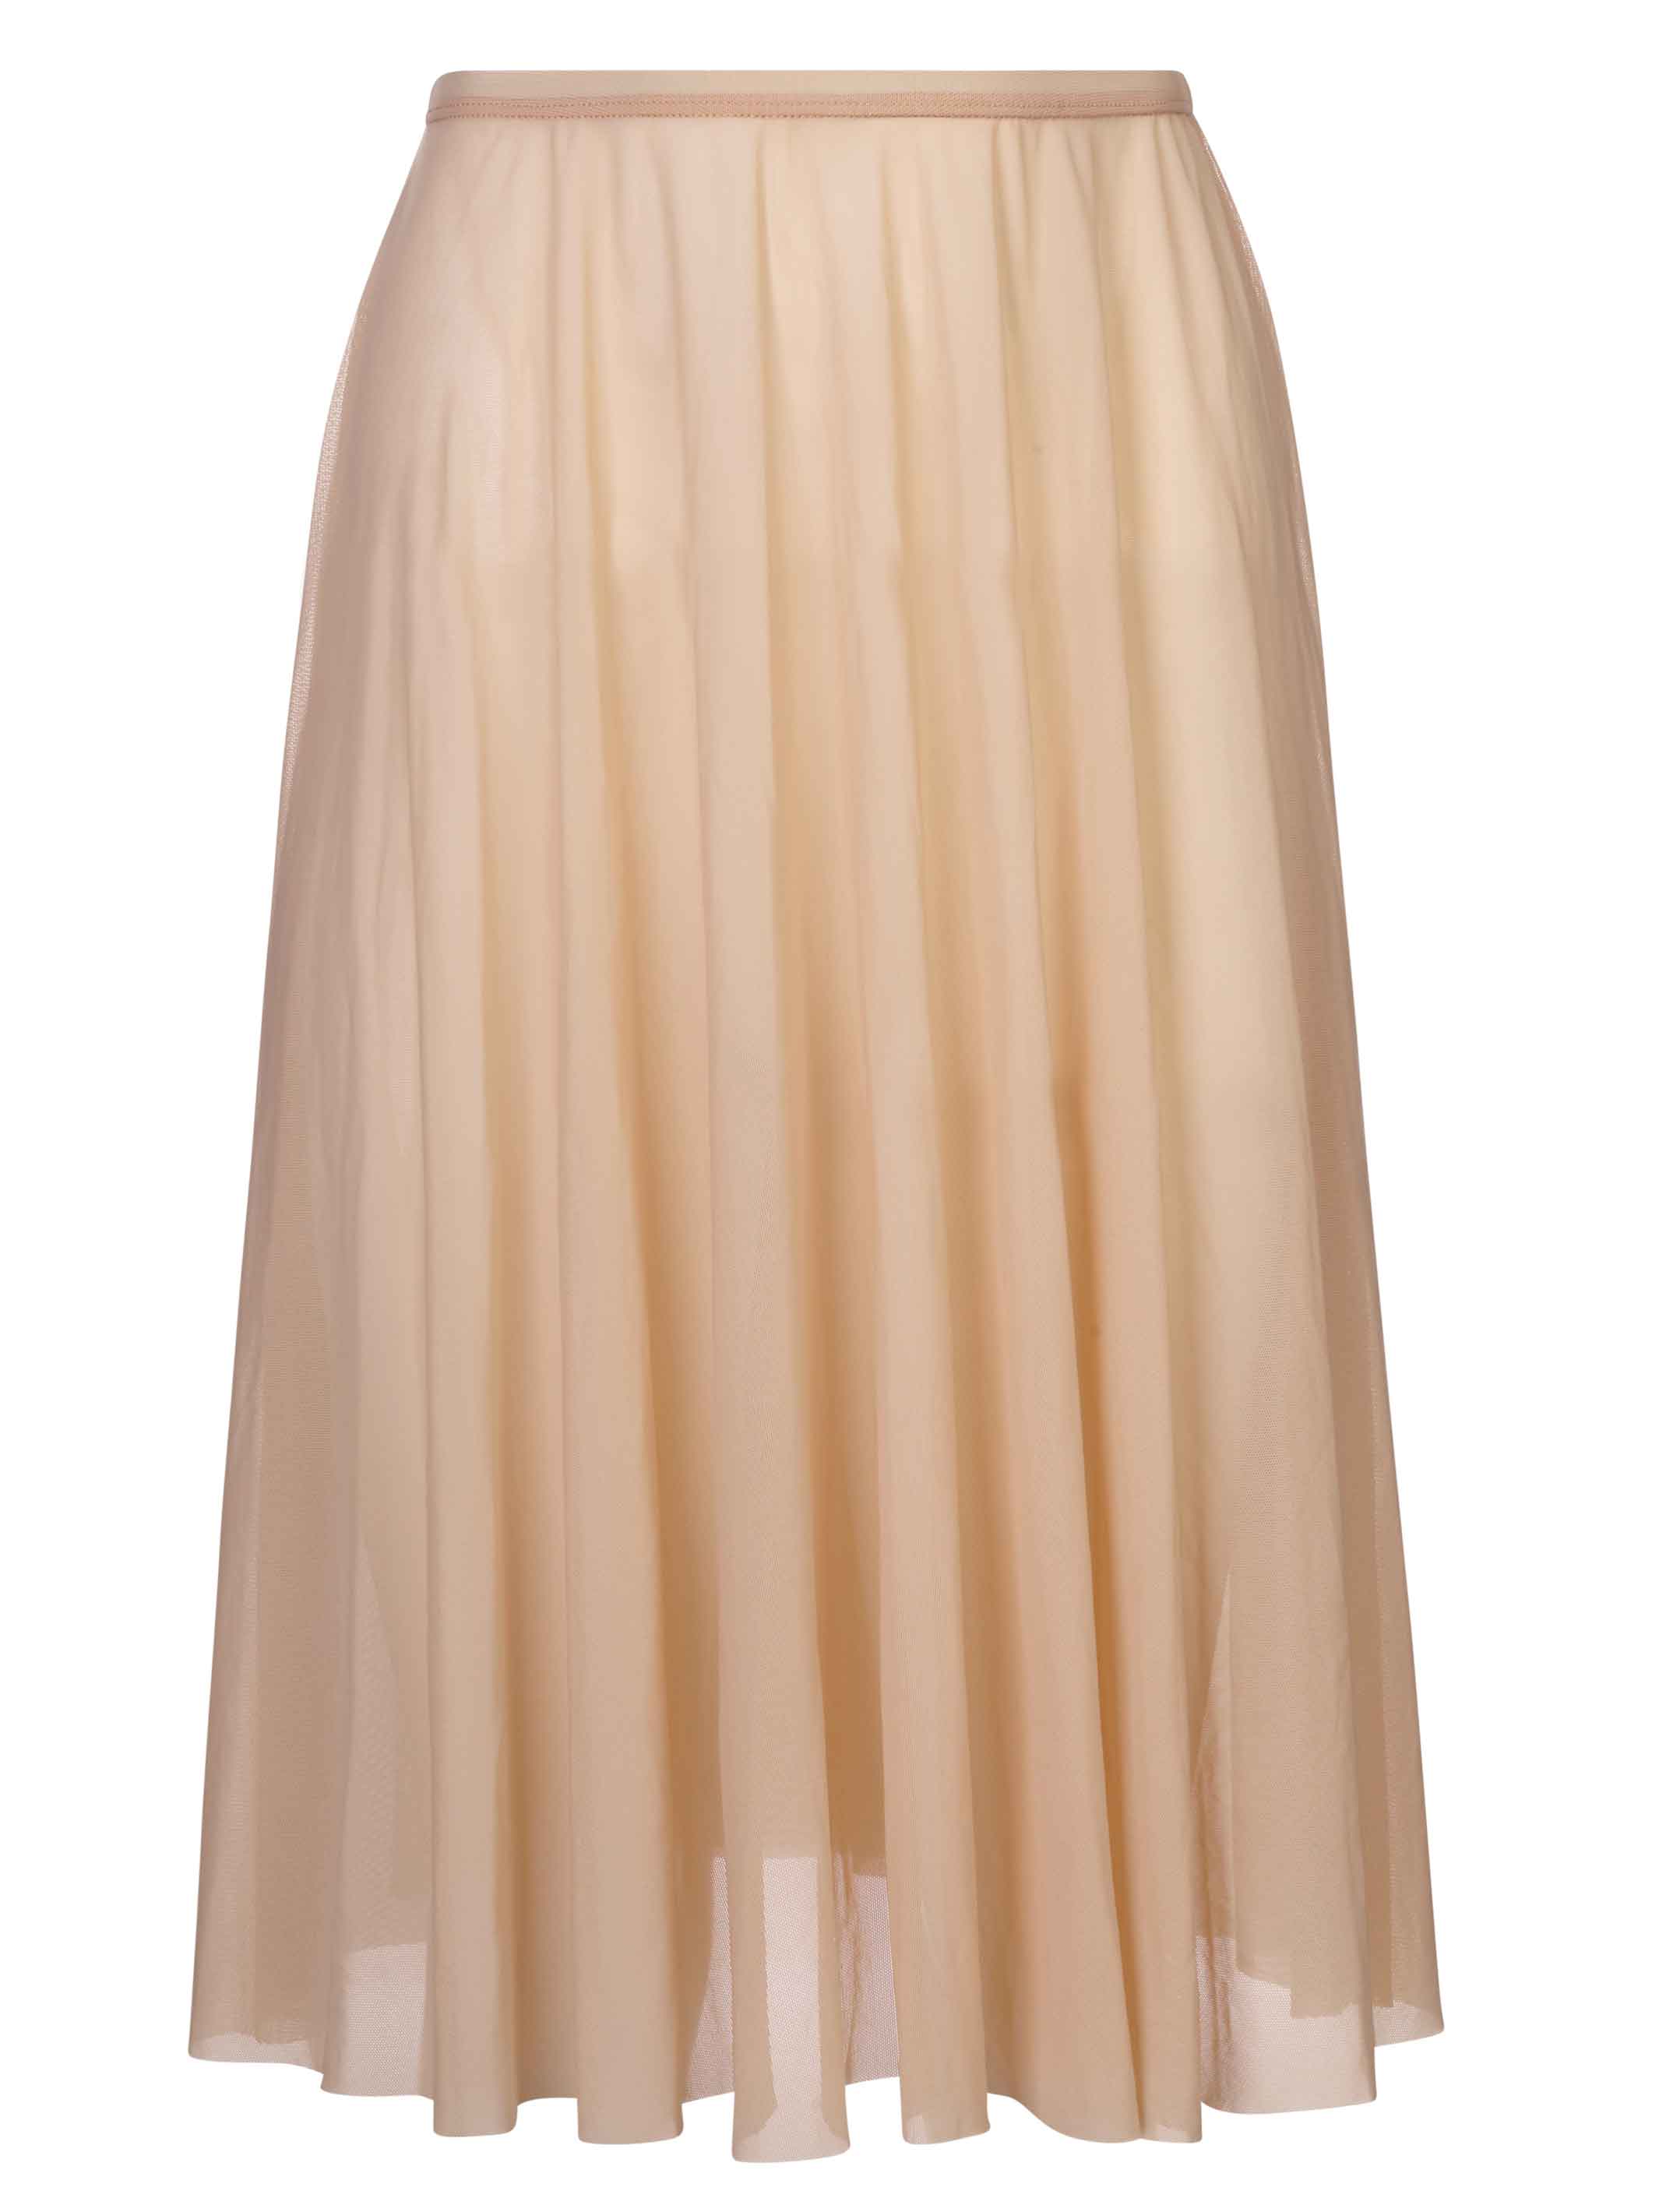 Ivory Cream Long Mesh Skirt